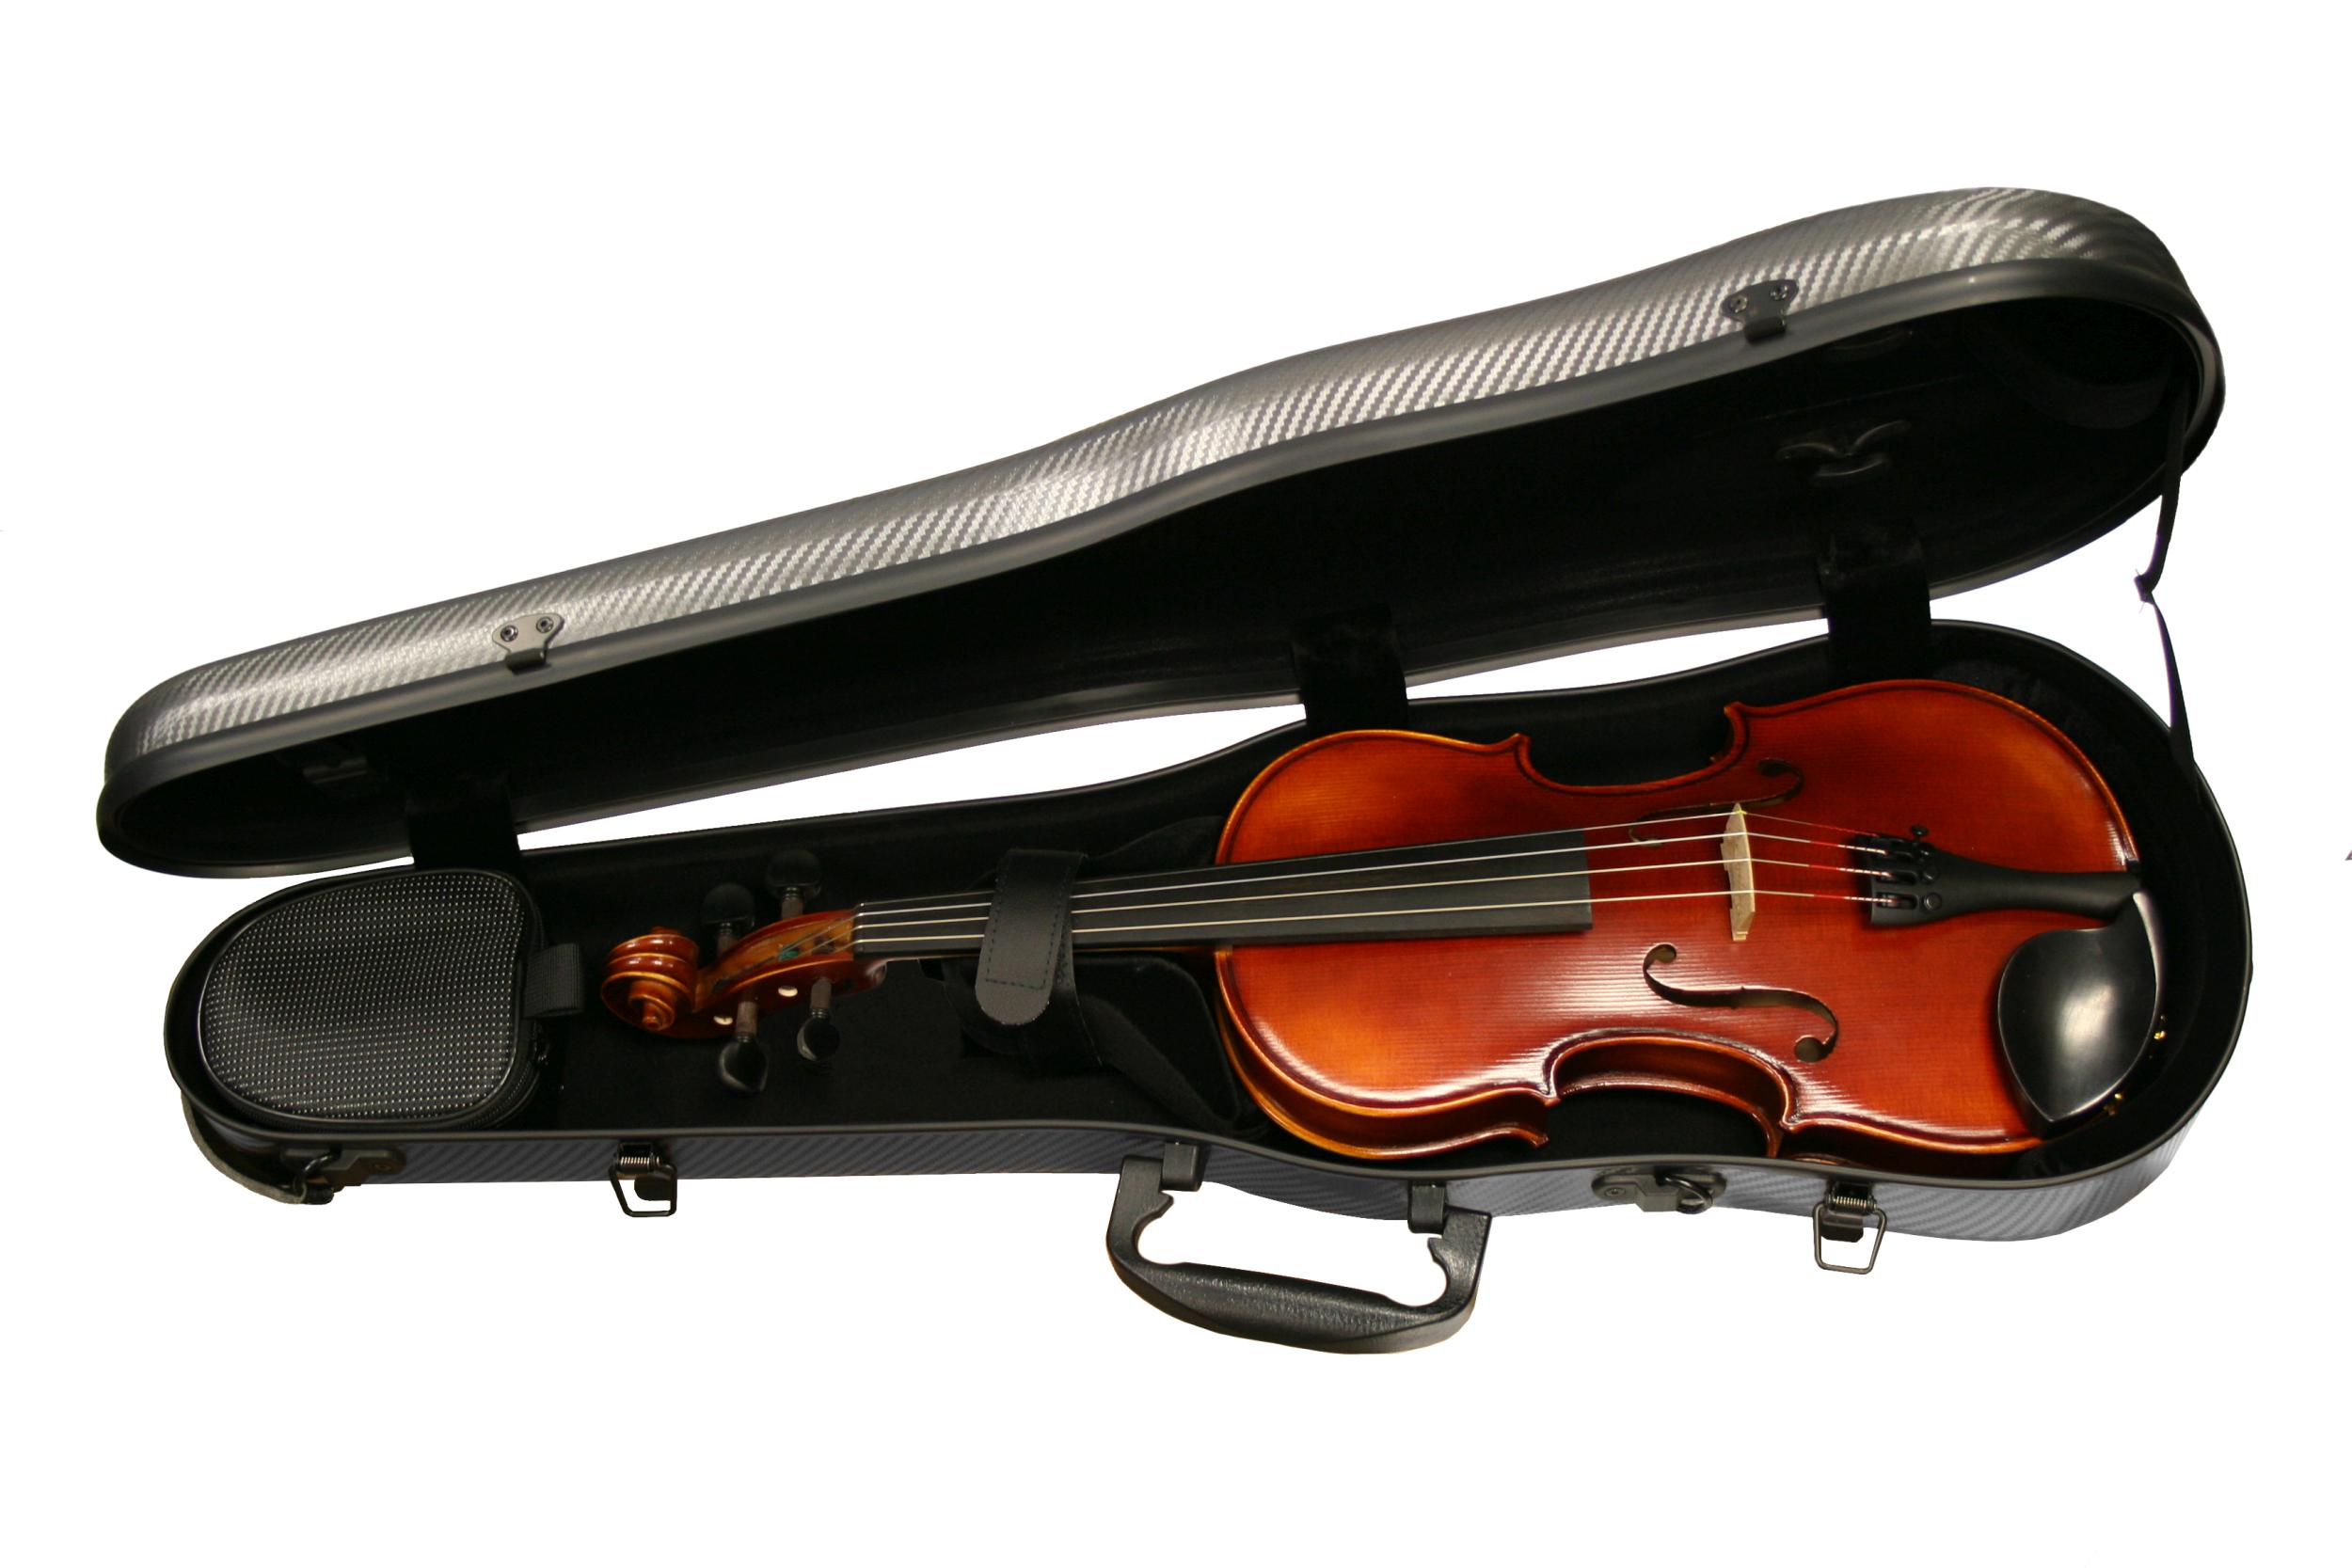 Gewa Pure Shaped Violin Case – Black Violins